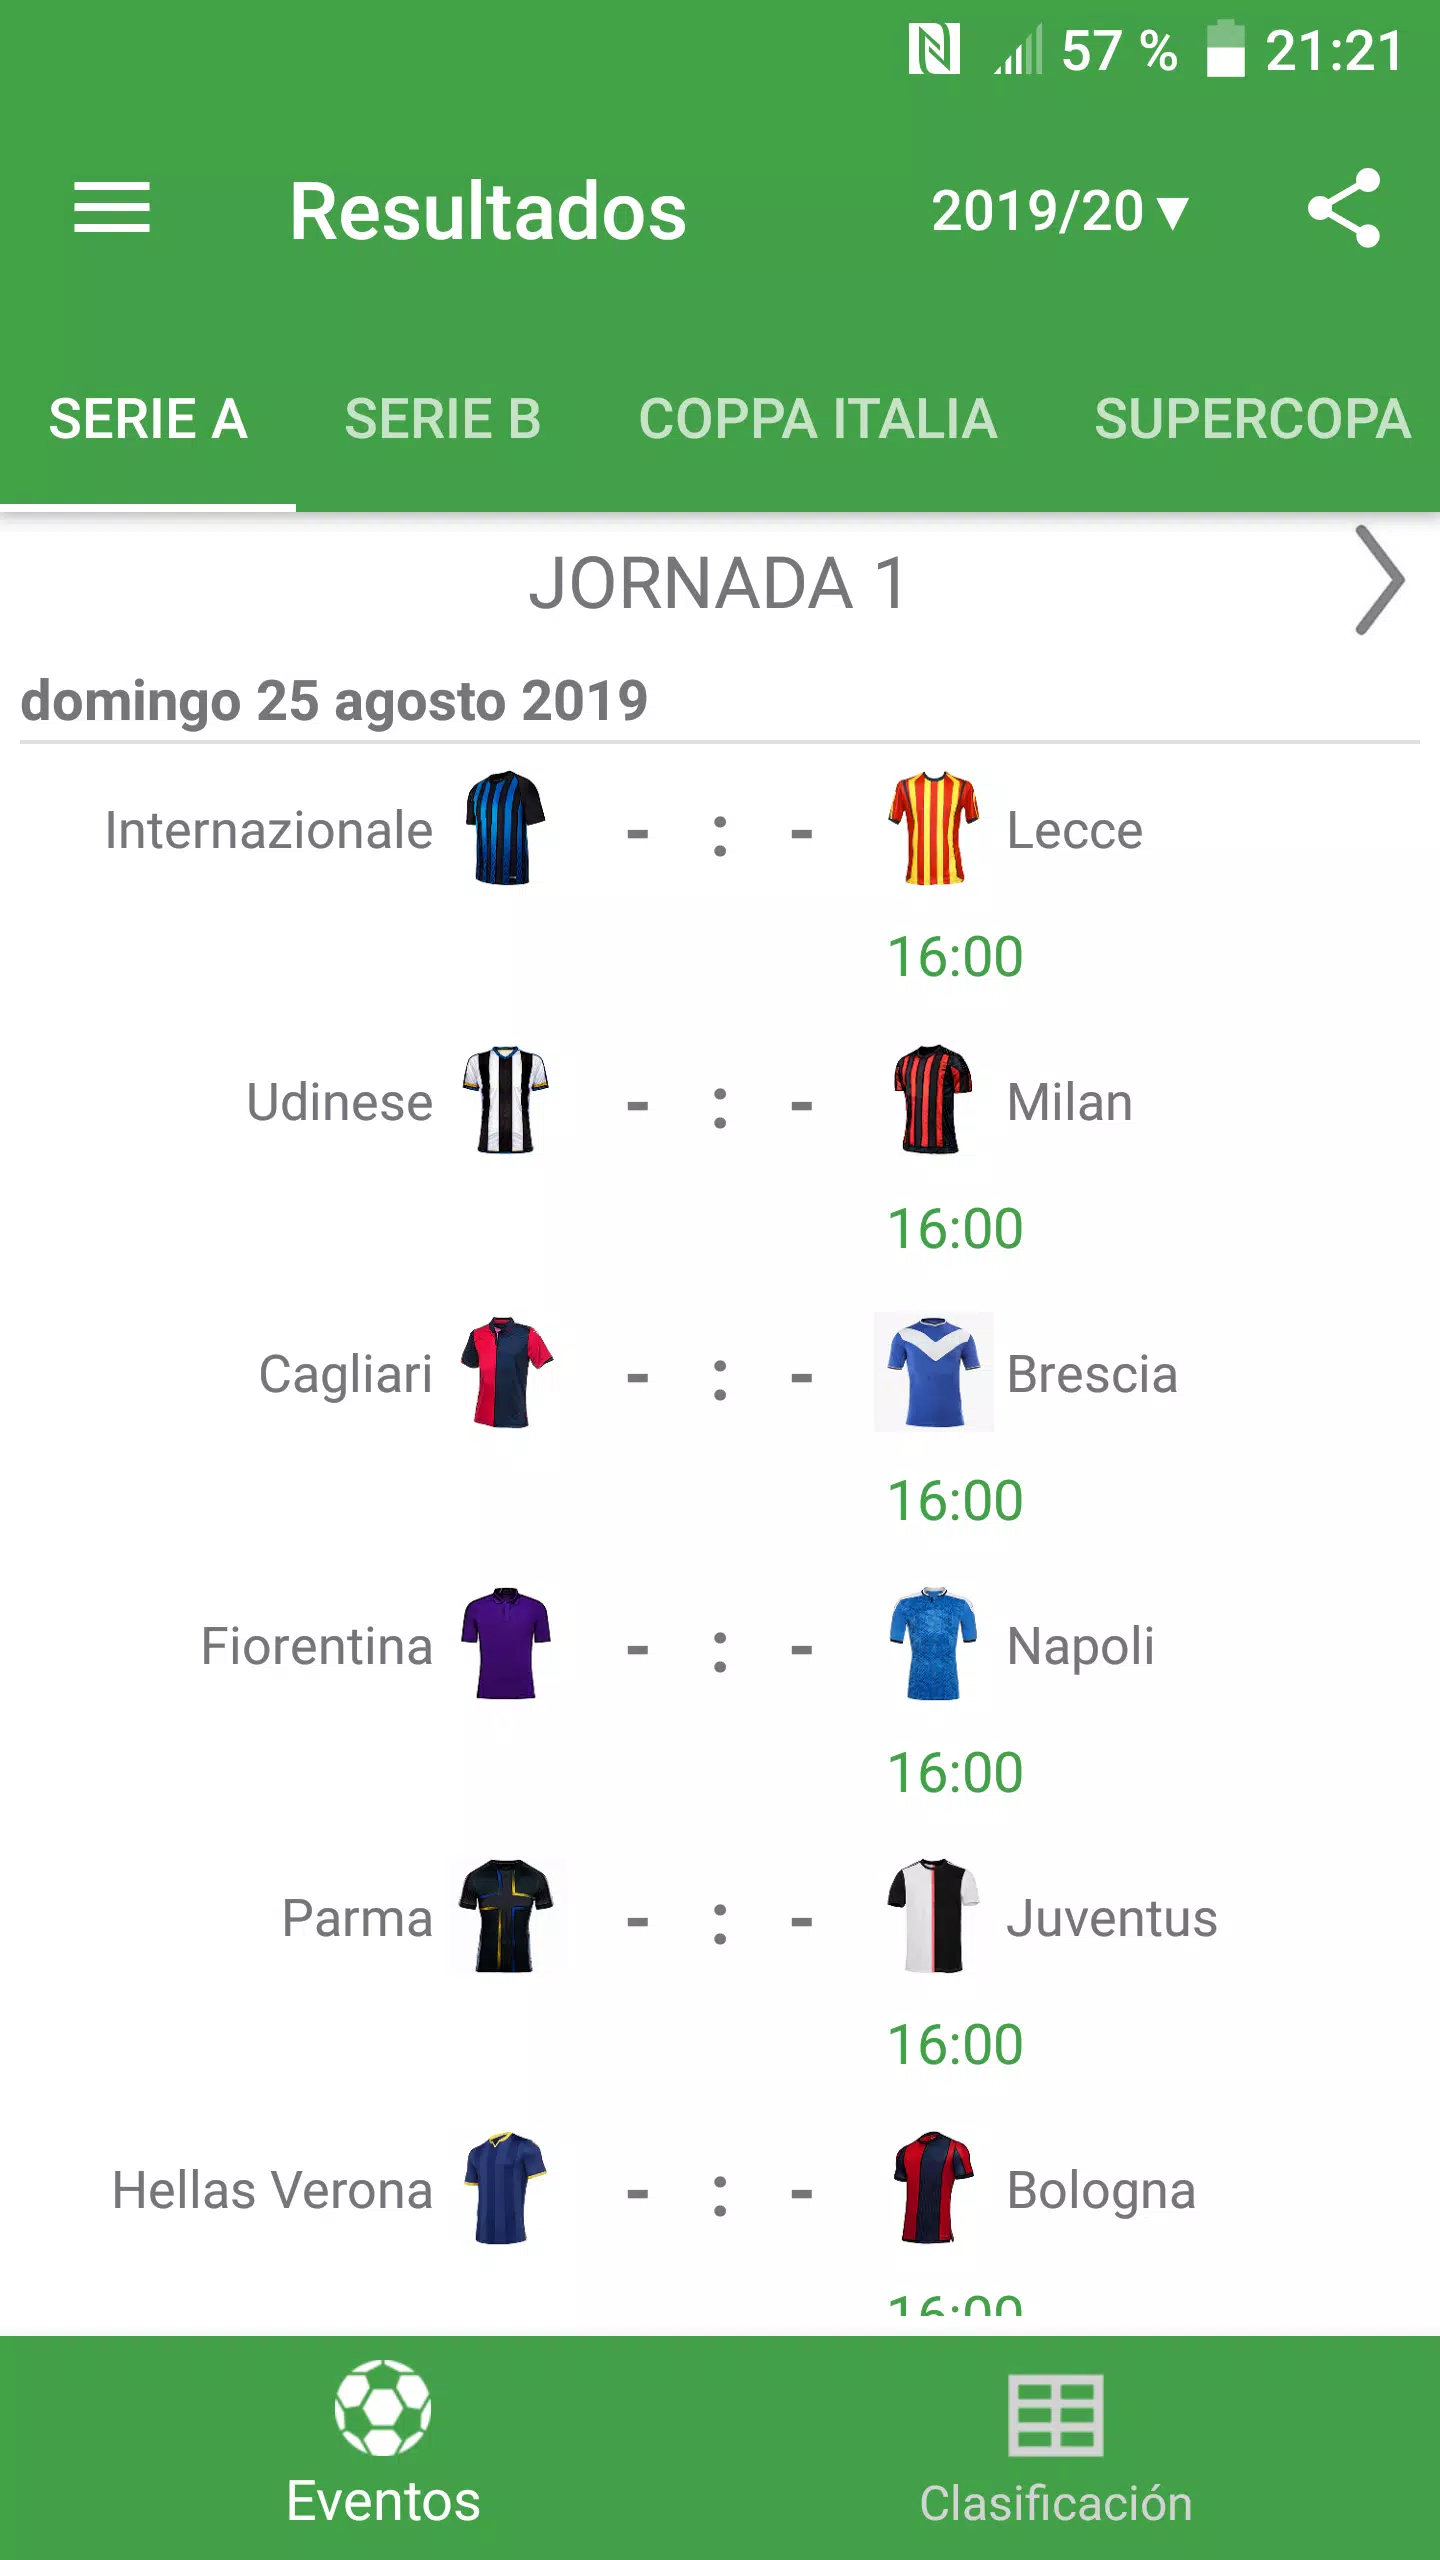 Descarga de APK de Resultados para la Serie A 2019/2020 Italia Android